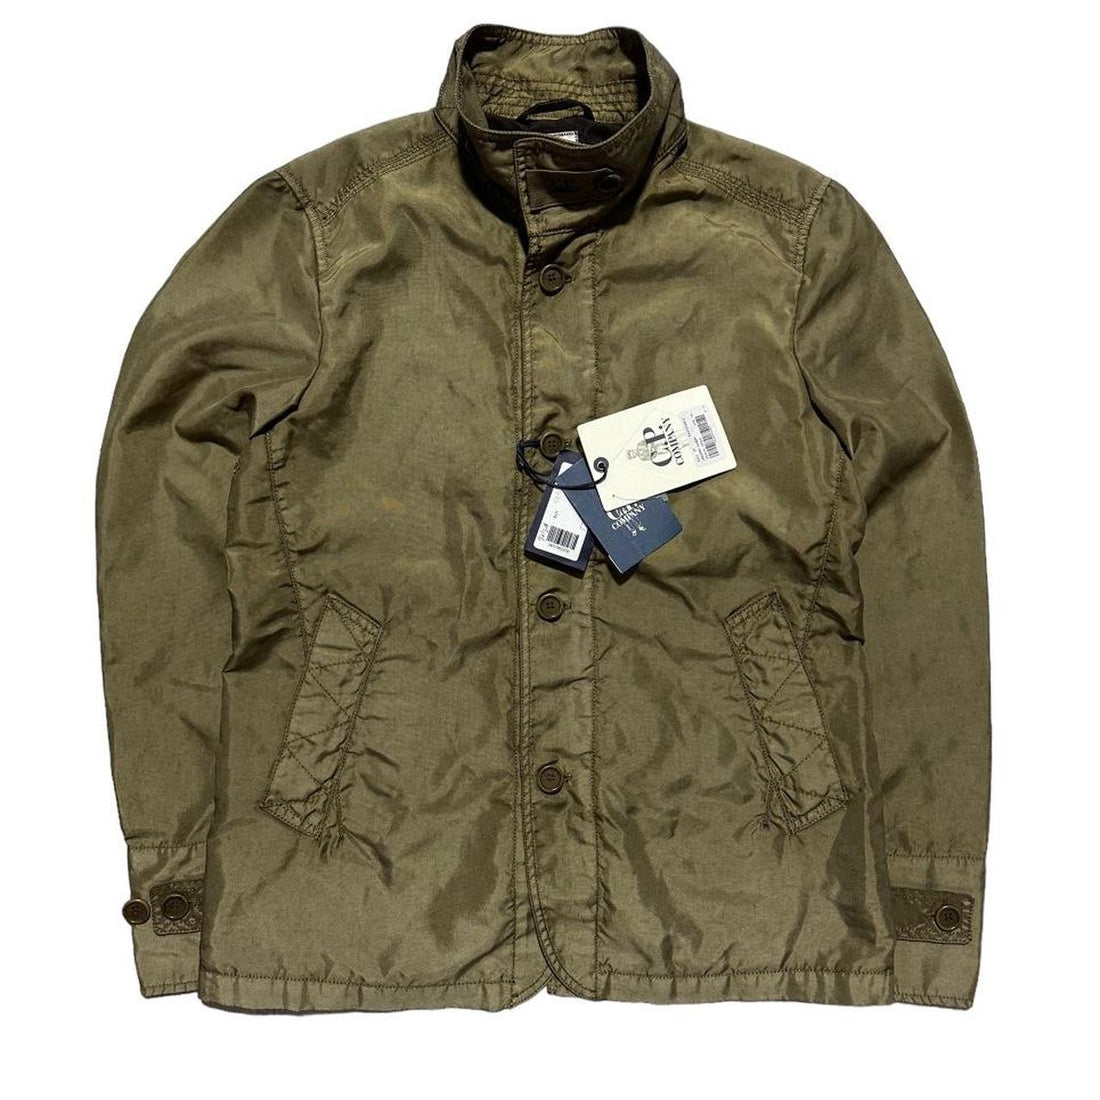 CP Company Nylon Jacket